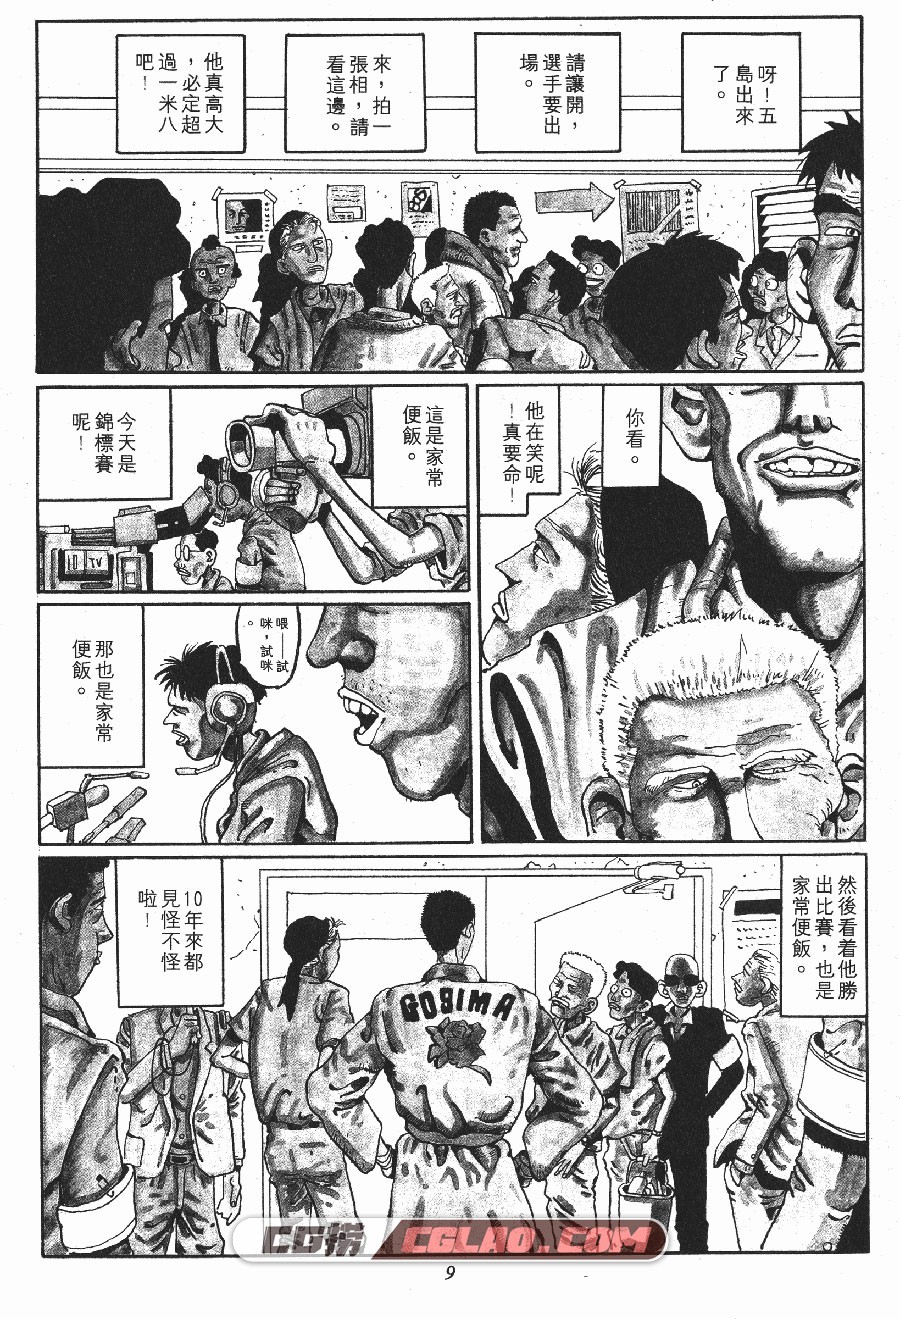 ZERO 松本大洋 1-2卷 漫画完结全集下载 百度网盘,_ZERO01-_0005.jpg